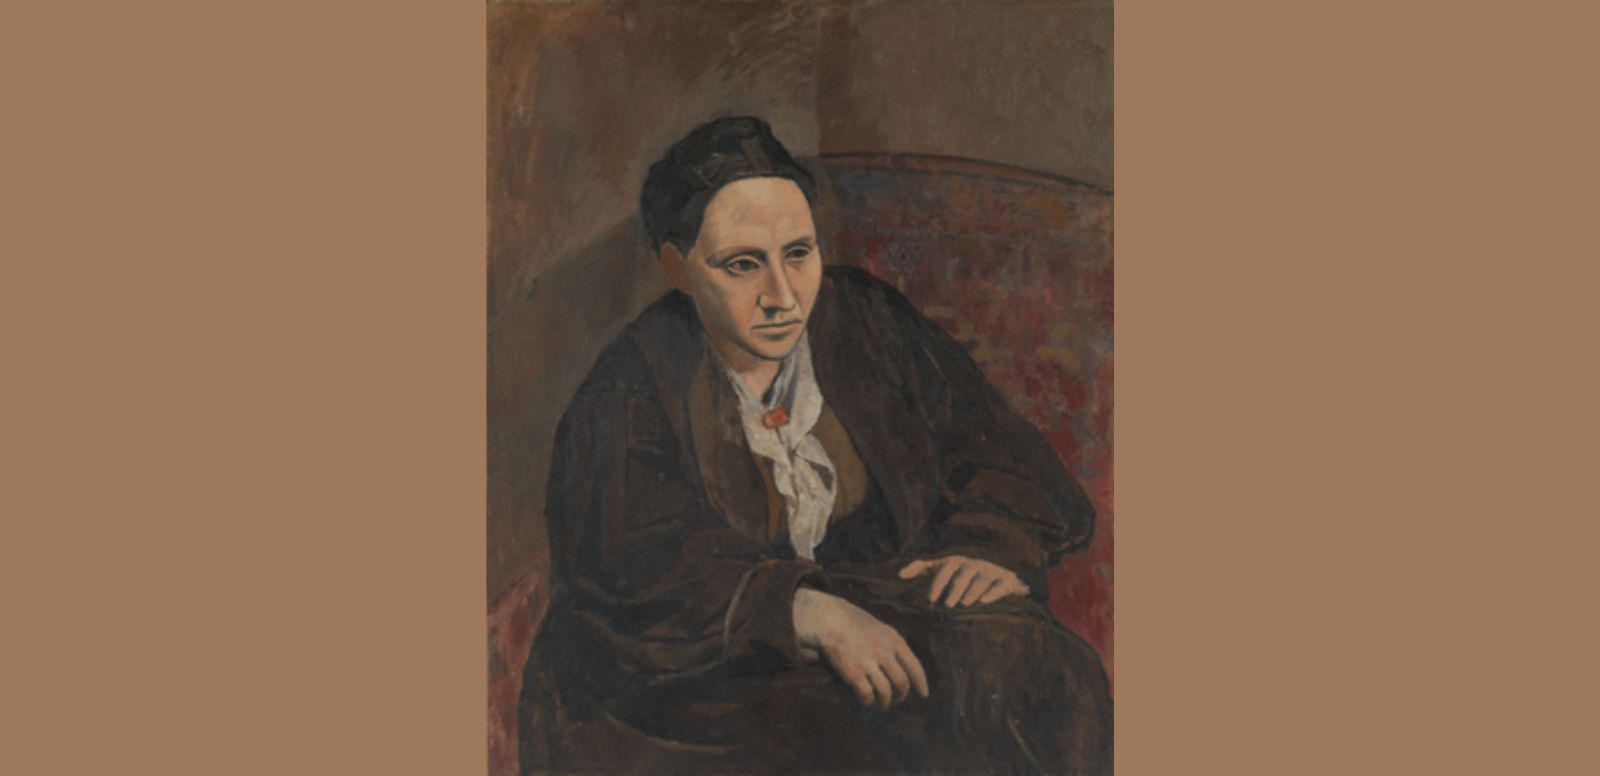 Pablo Picasso, “Retrato de Gertrude Stein” 1905-1906